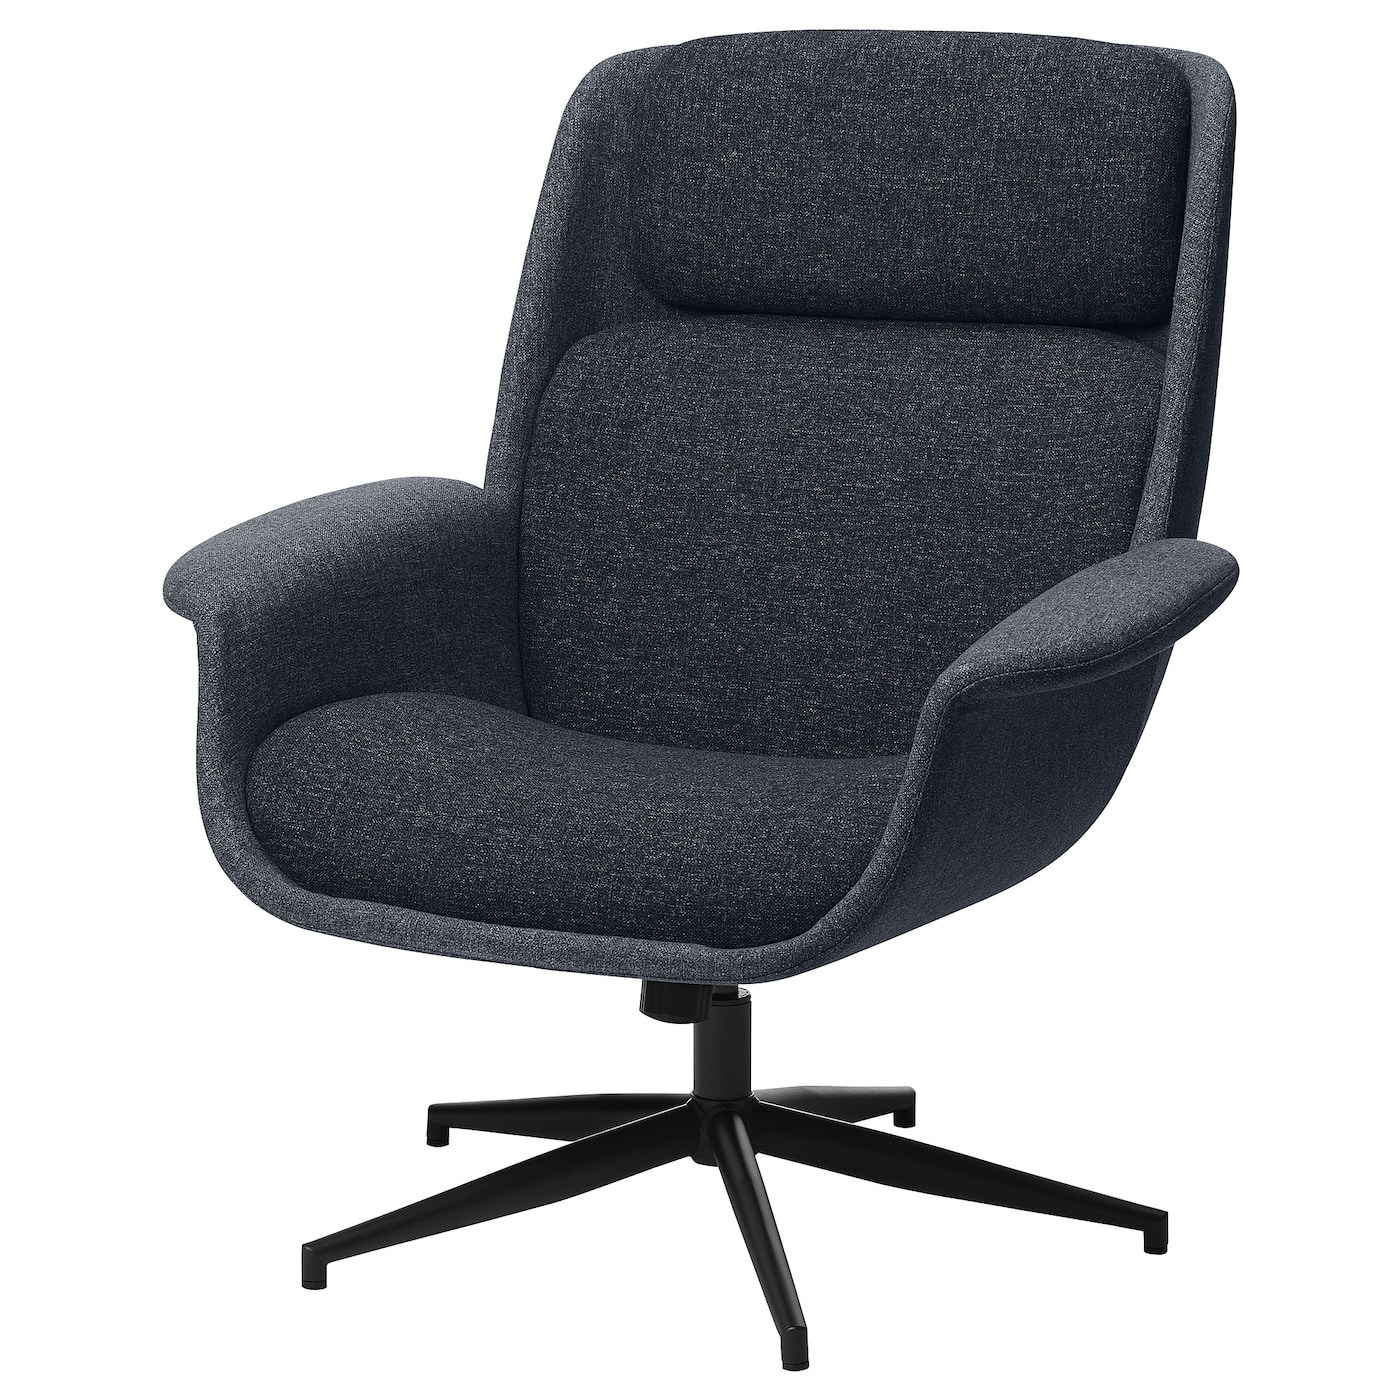 ЭЛЕБИ Вращающееся кресло, Гуннаред средний серый/темно-серый ÄLEBY IKEA кресло olss престиж темно серый в 40